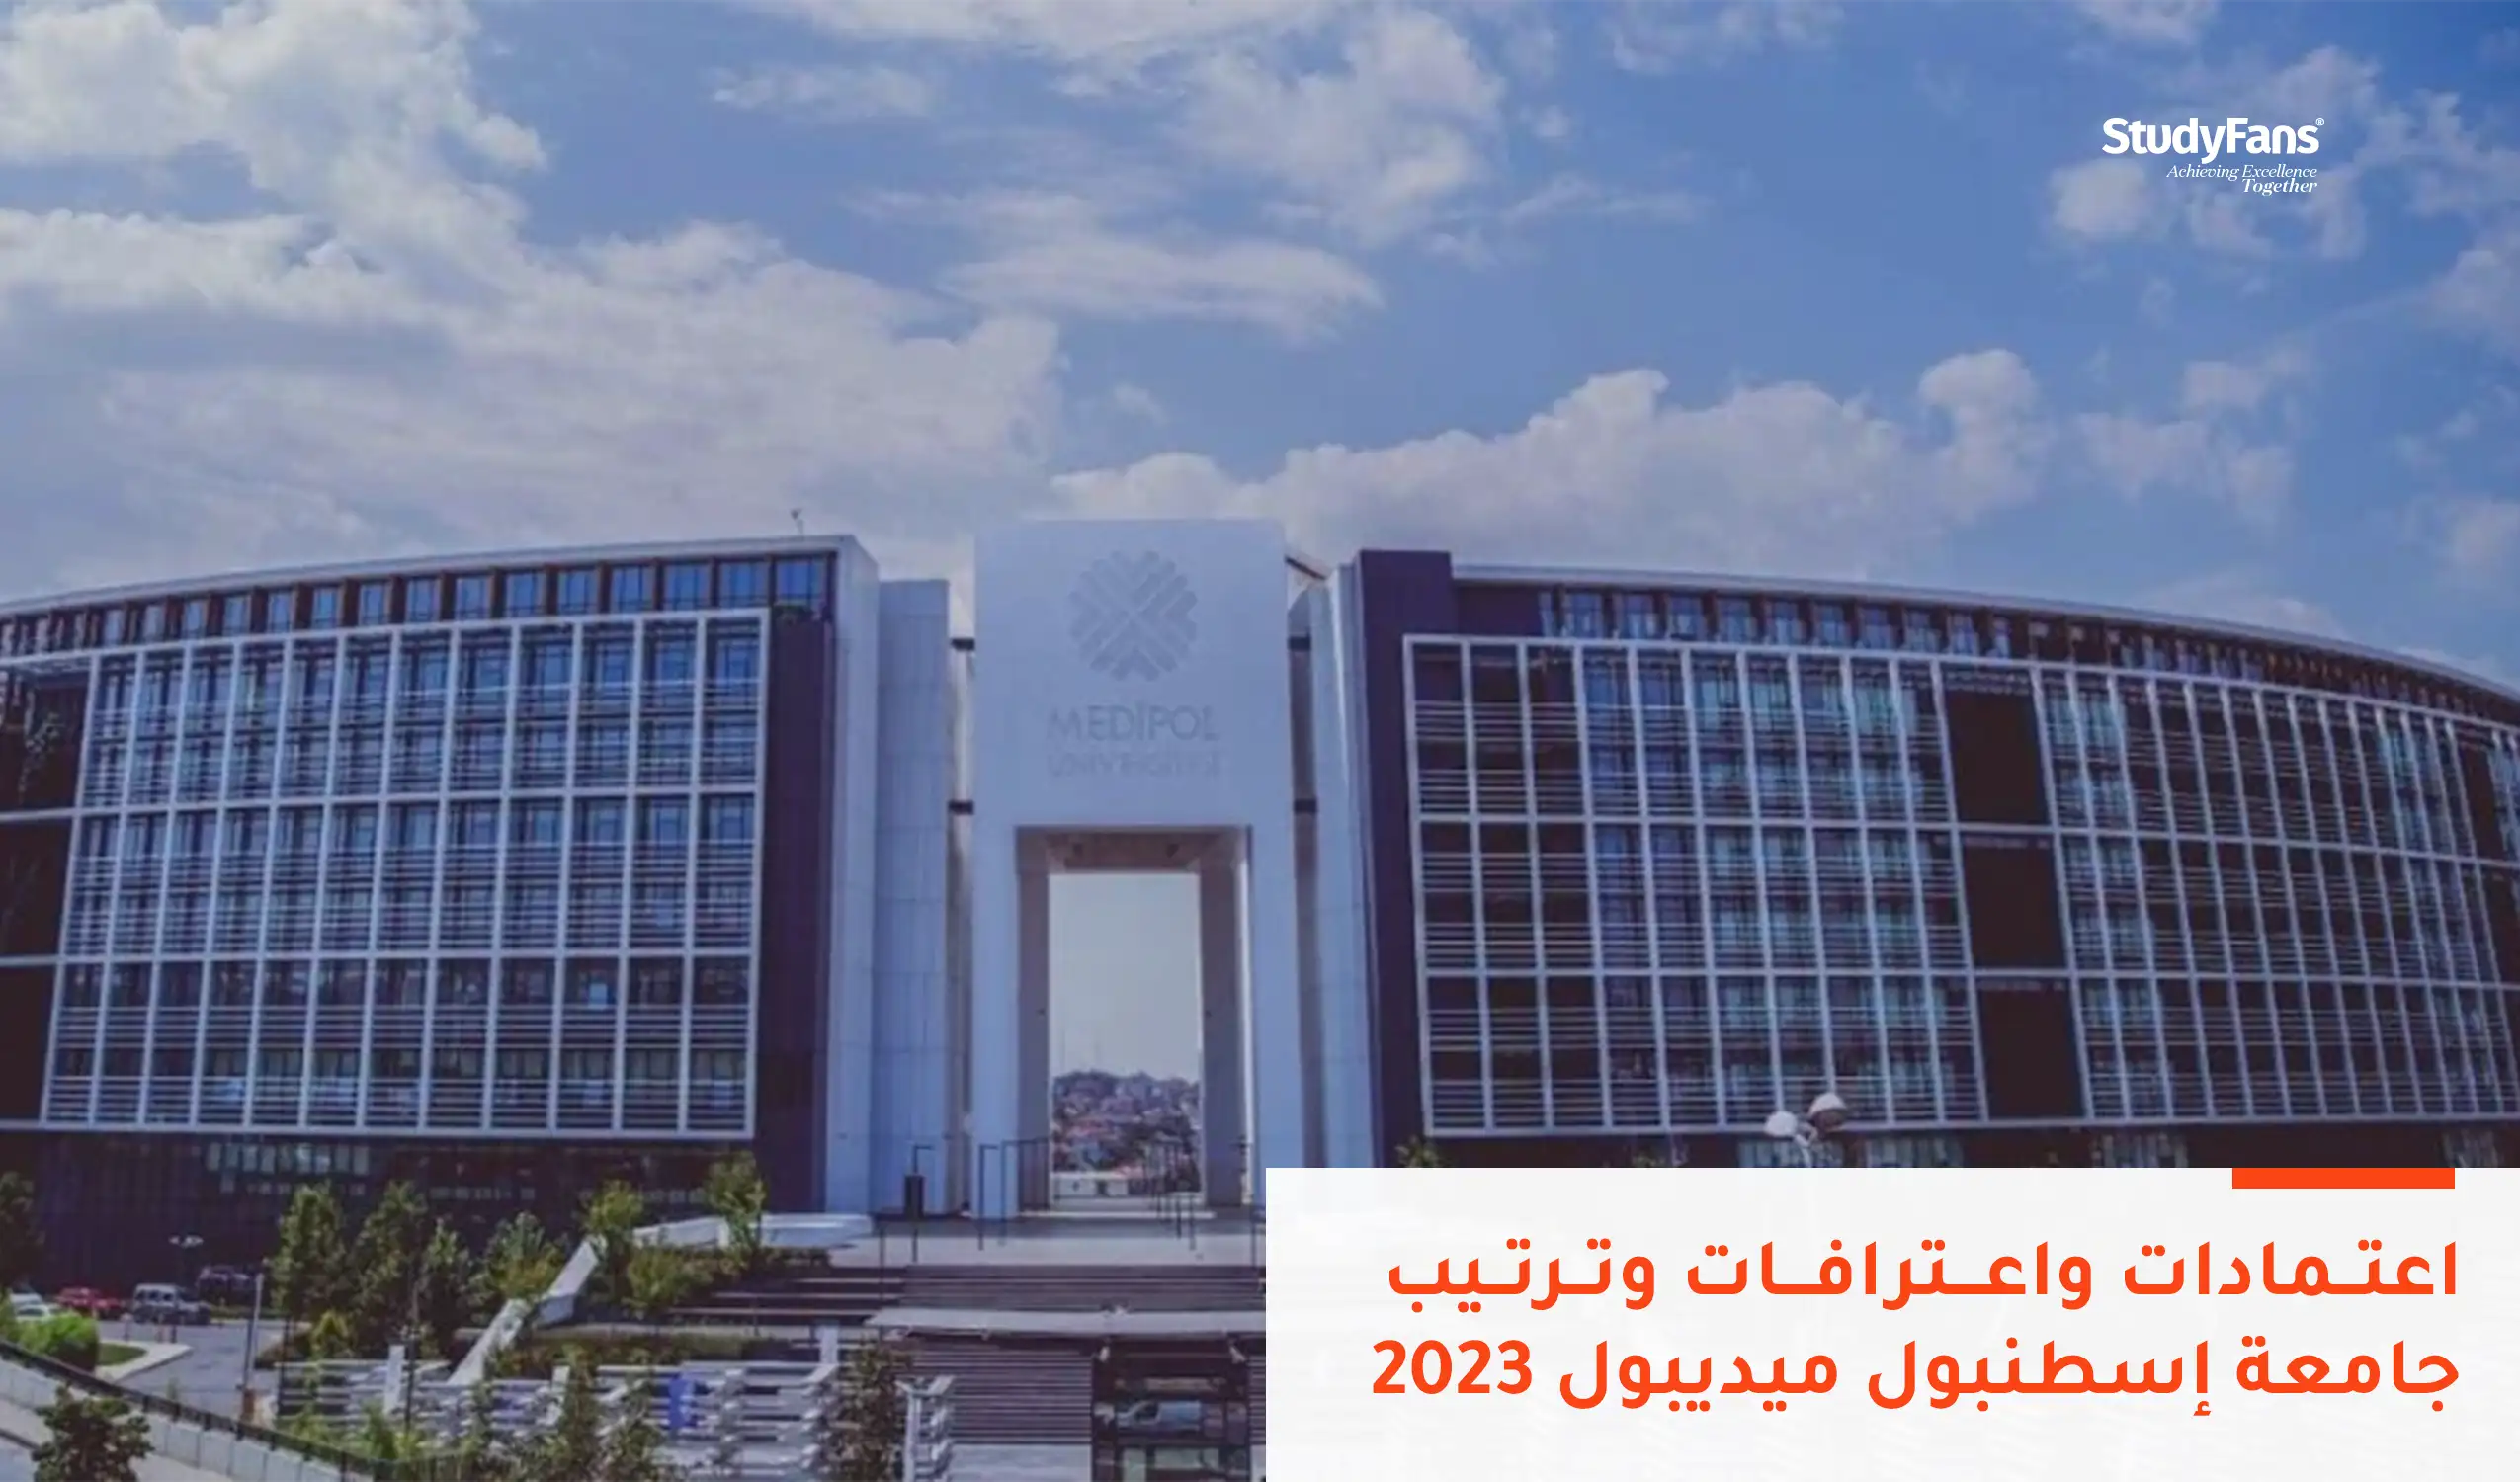 اعتمادات واعترافات جامعة إسطنبول ميديبول 2023